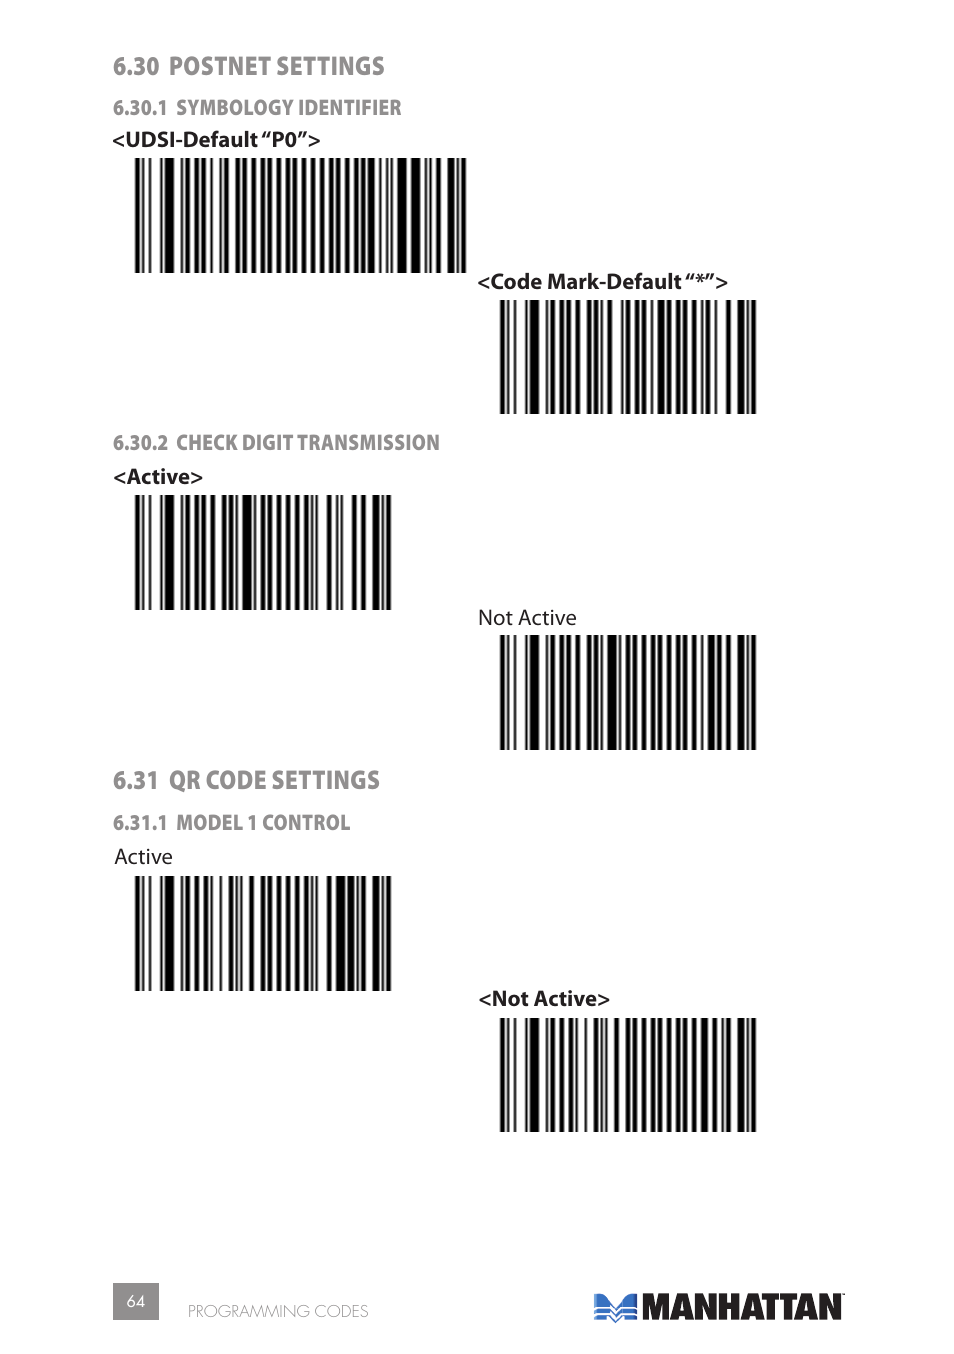 30 postnet settings, 31 qr code settings | Manhattan 177603 2D Barcode  Scanner - Manual User Manual | Page 64 / 80